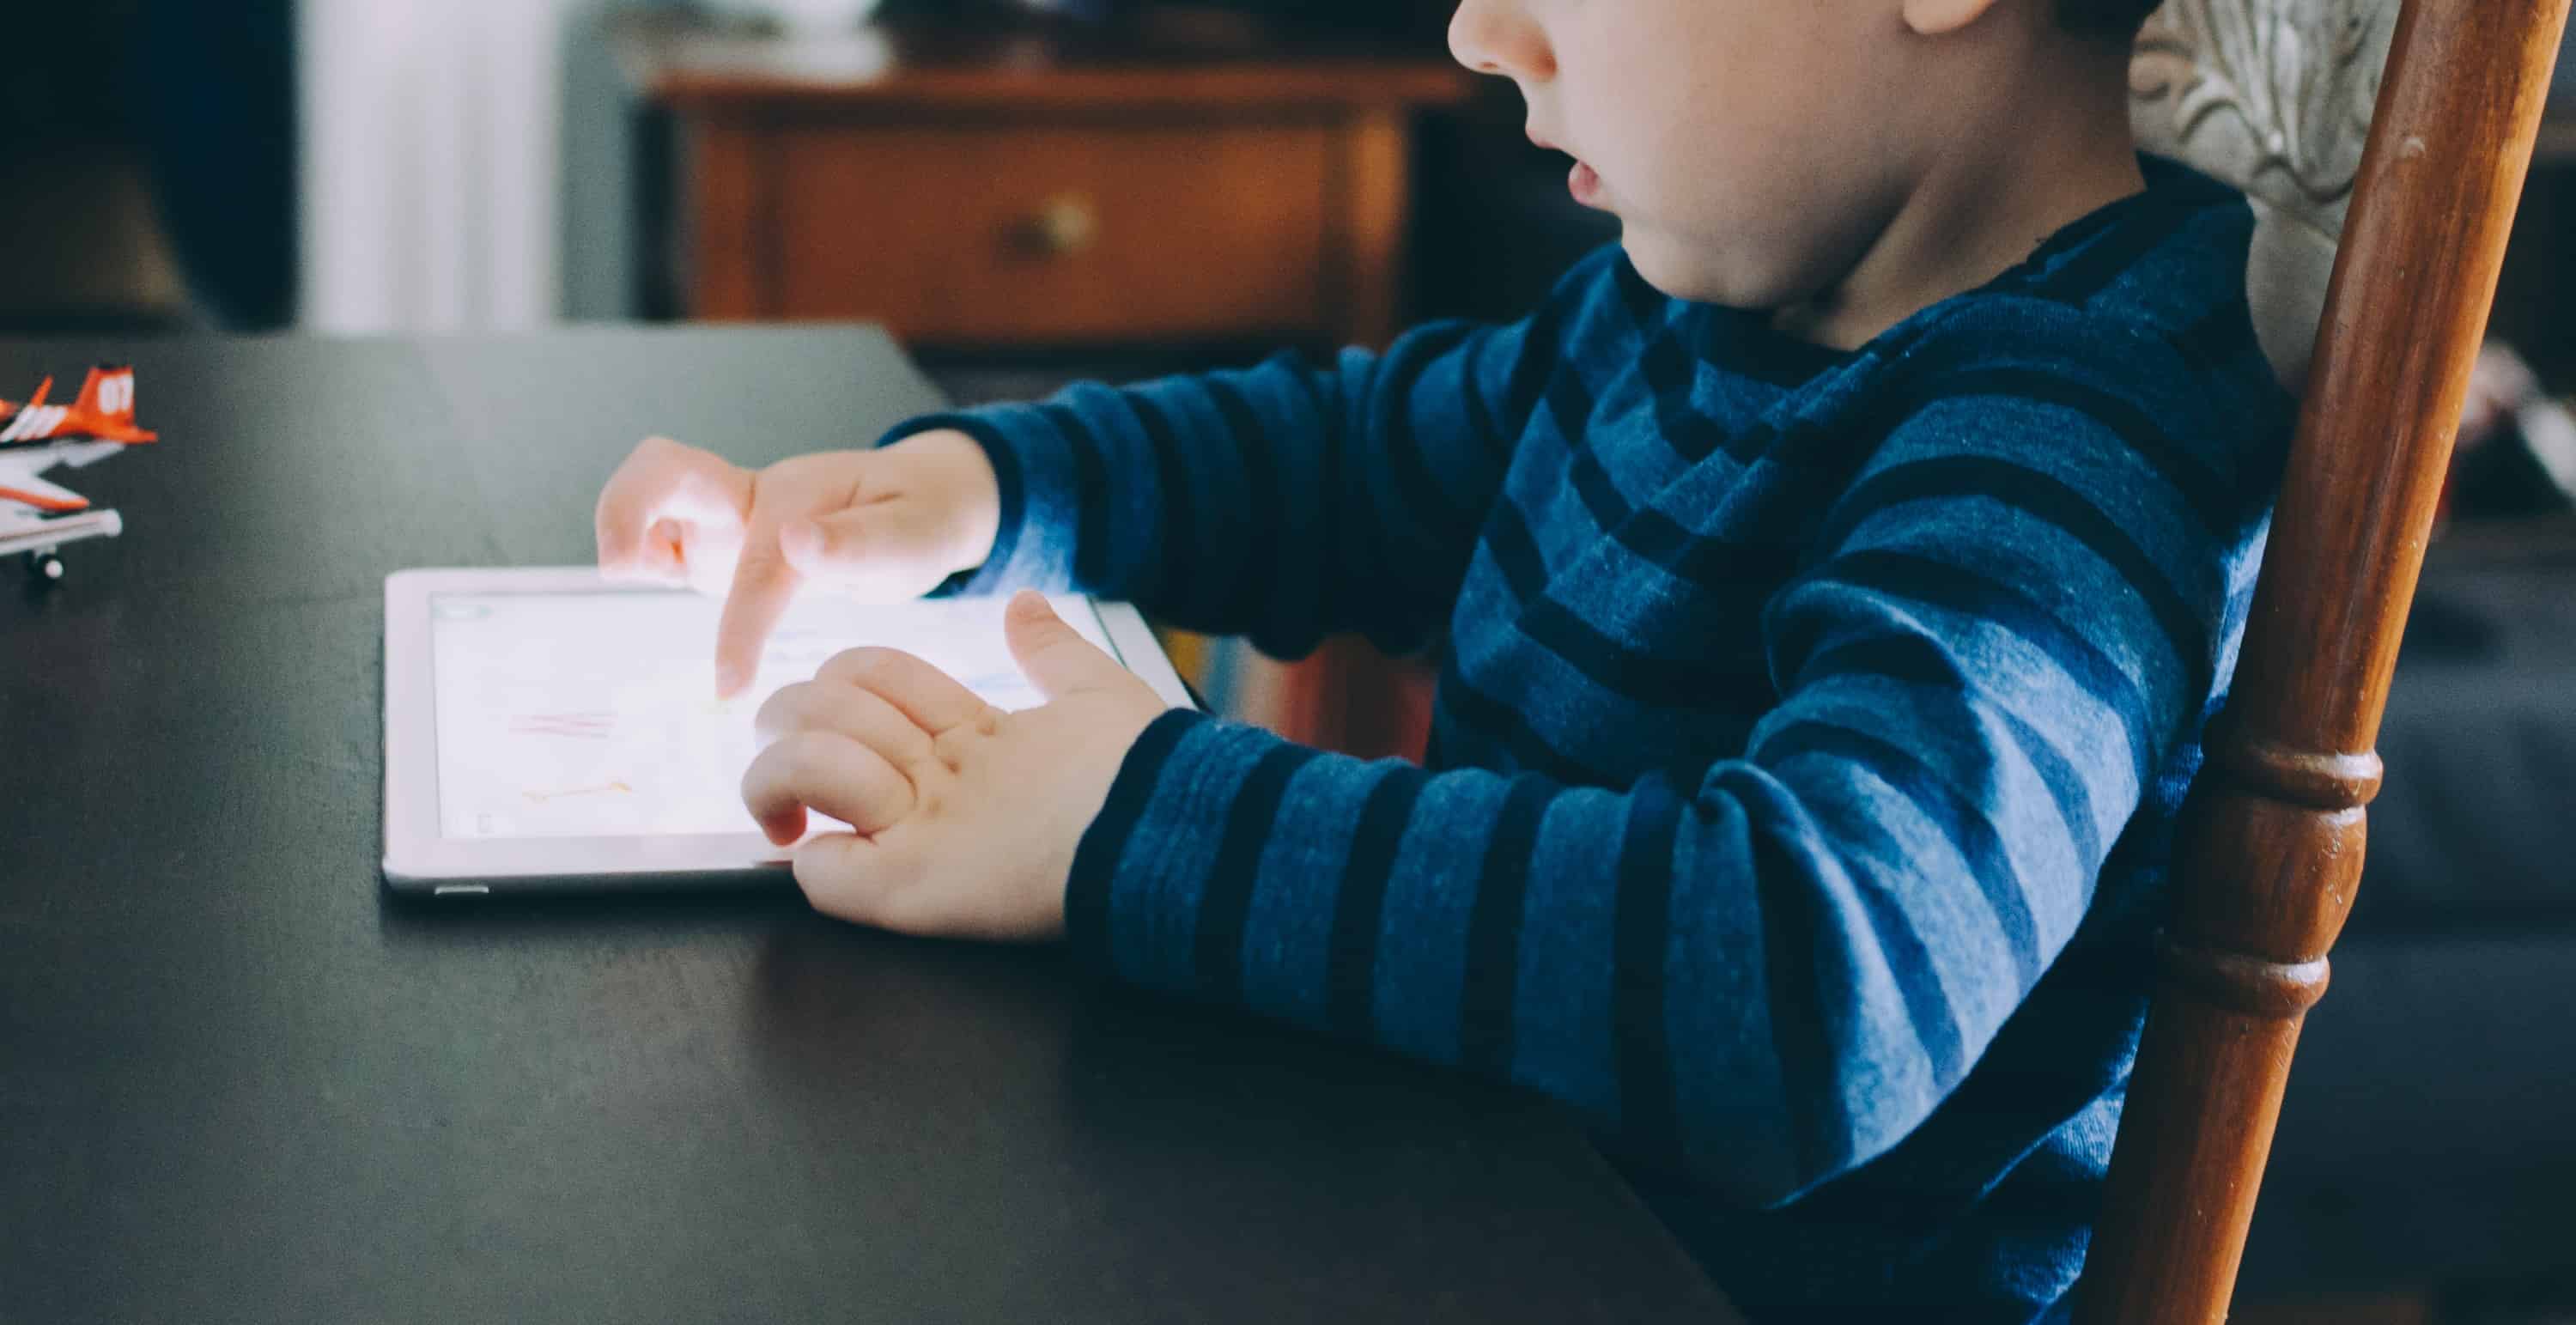 Глаза детей подвергаются риску из-за использования экрана, но умные решения уже в пути